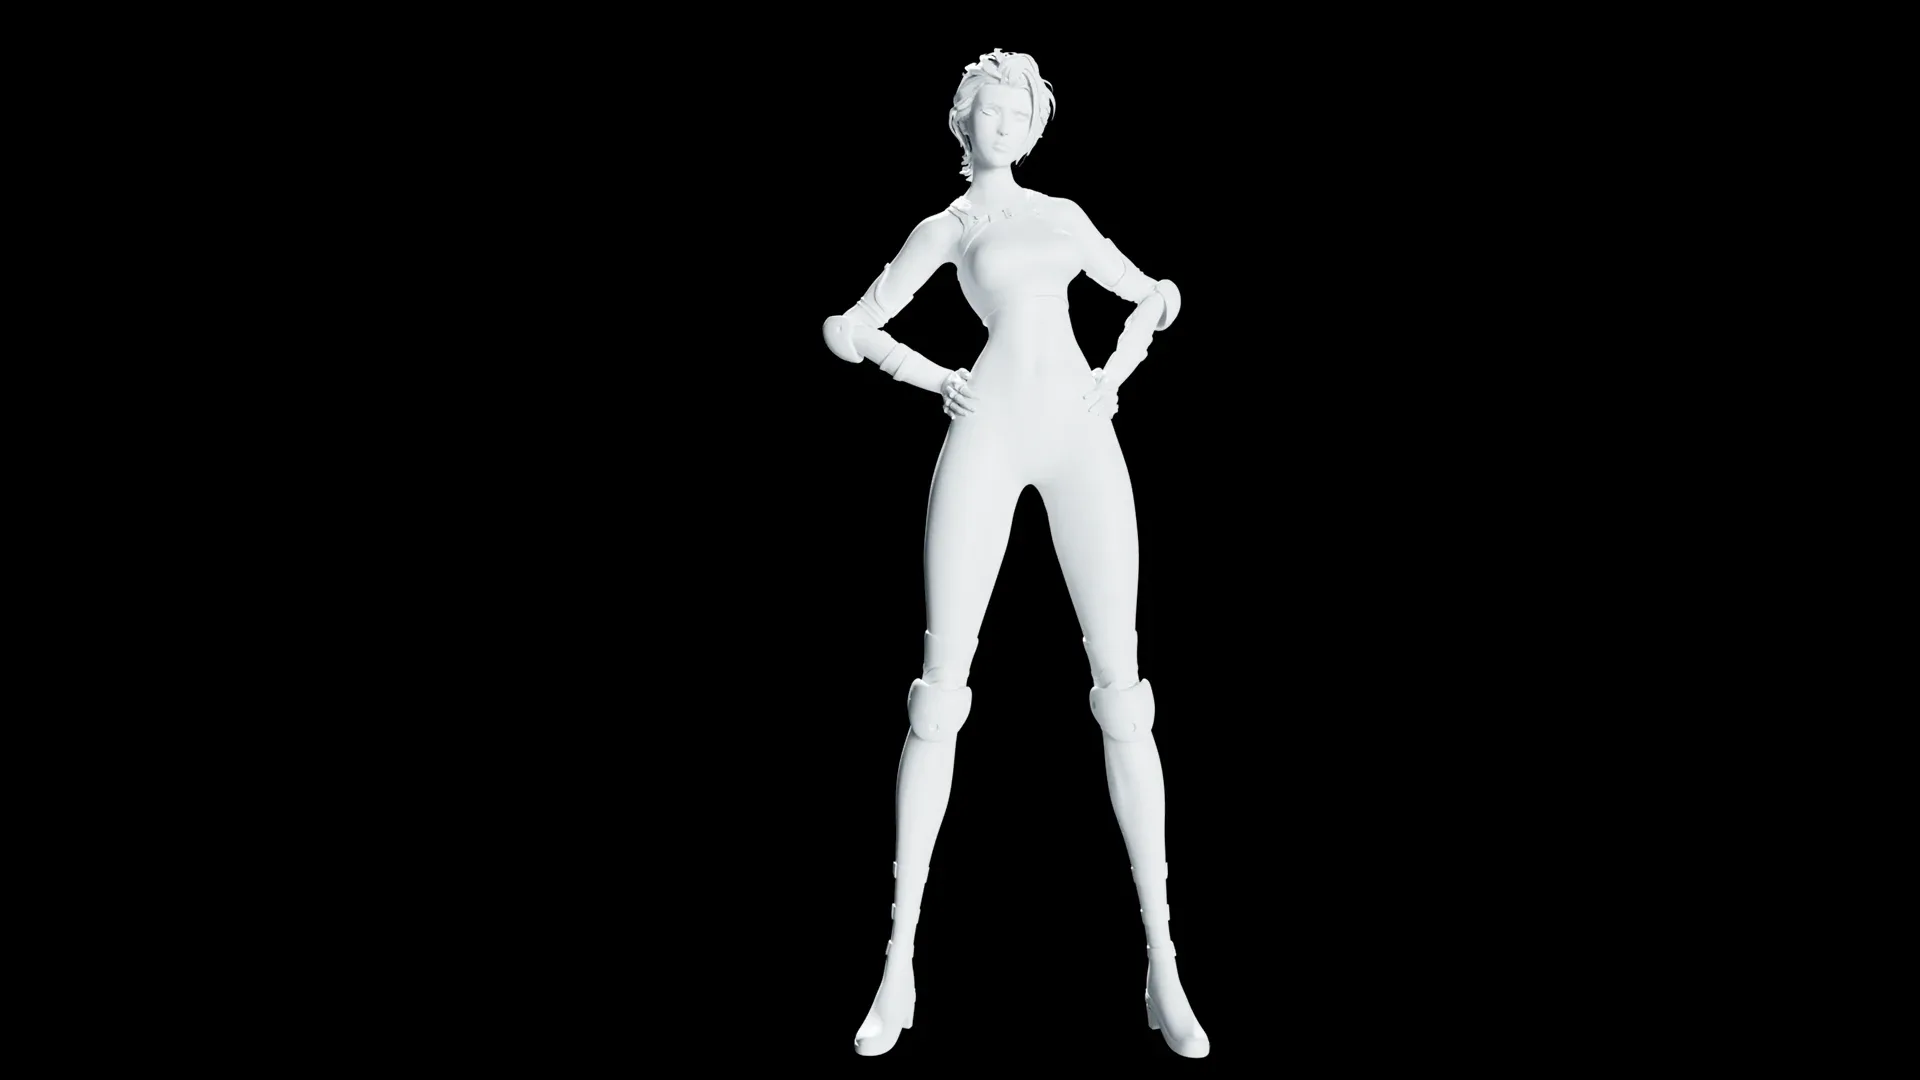 Super heroine model - stylized female rigged character for blender